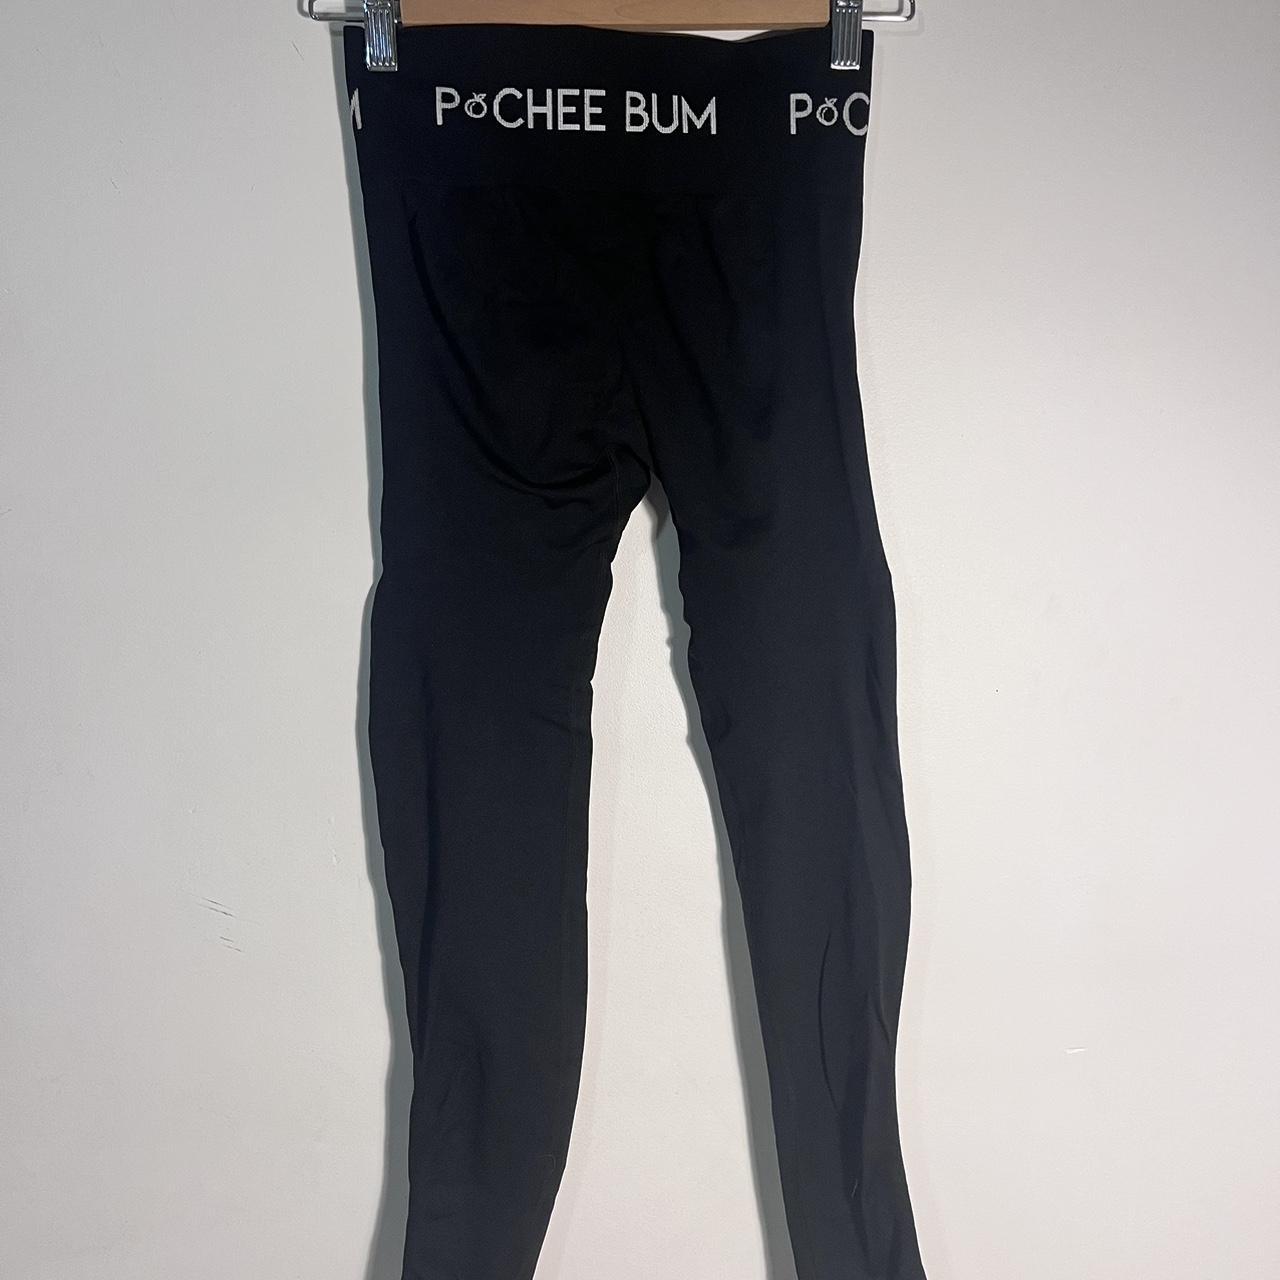 Echt scrunch leggings steel blue, XS 💙 Gorgeous - Depop